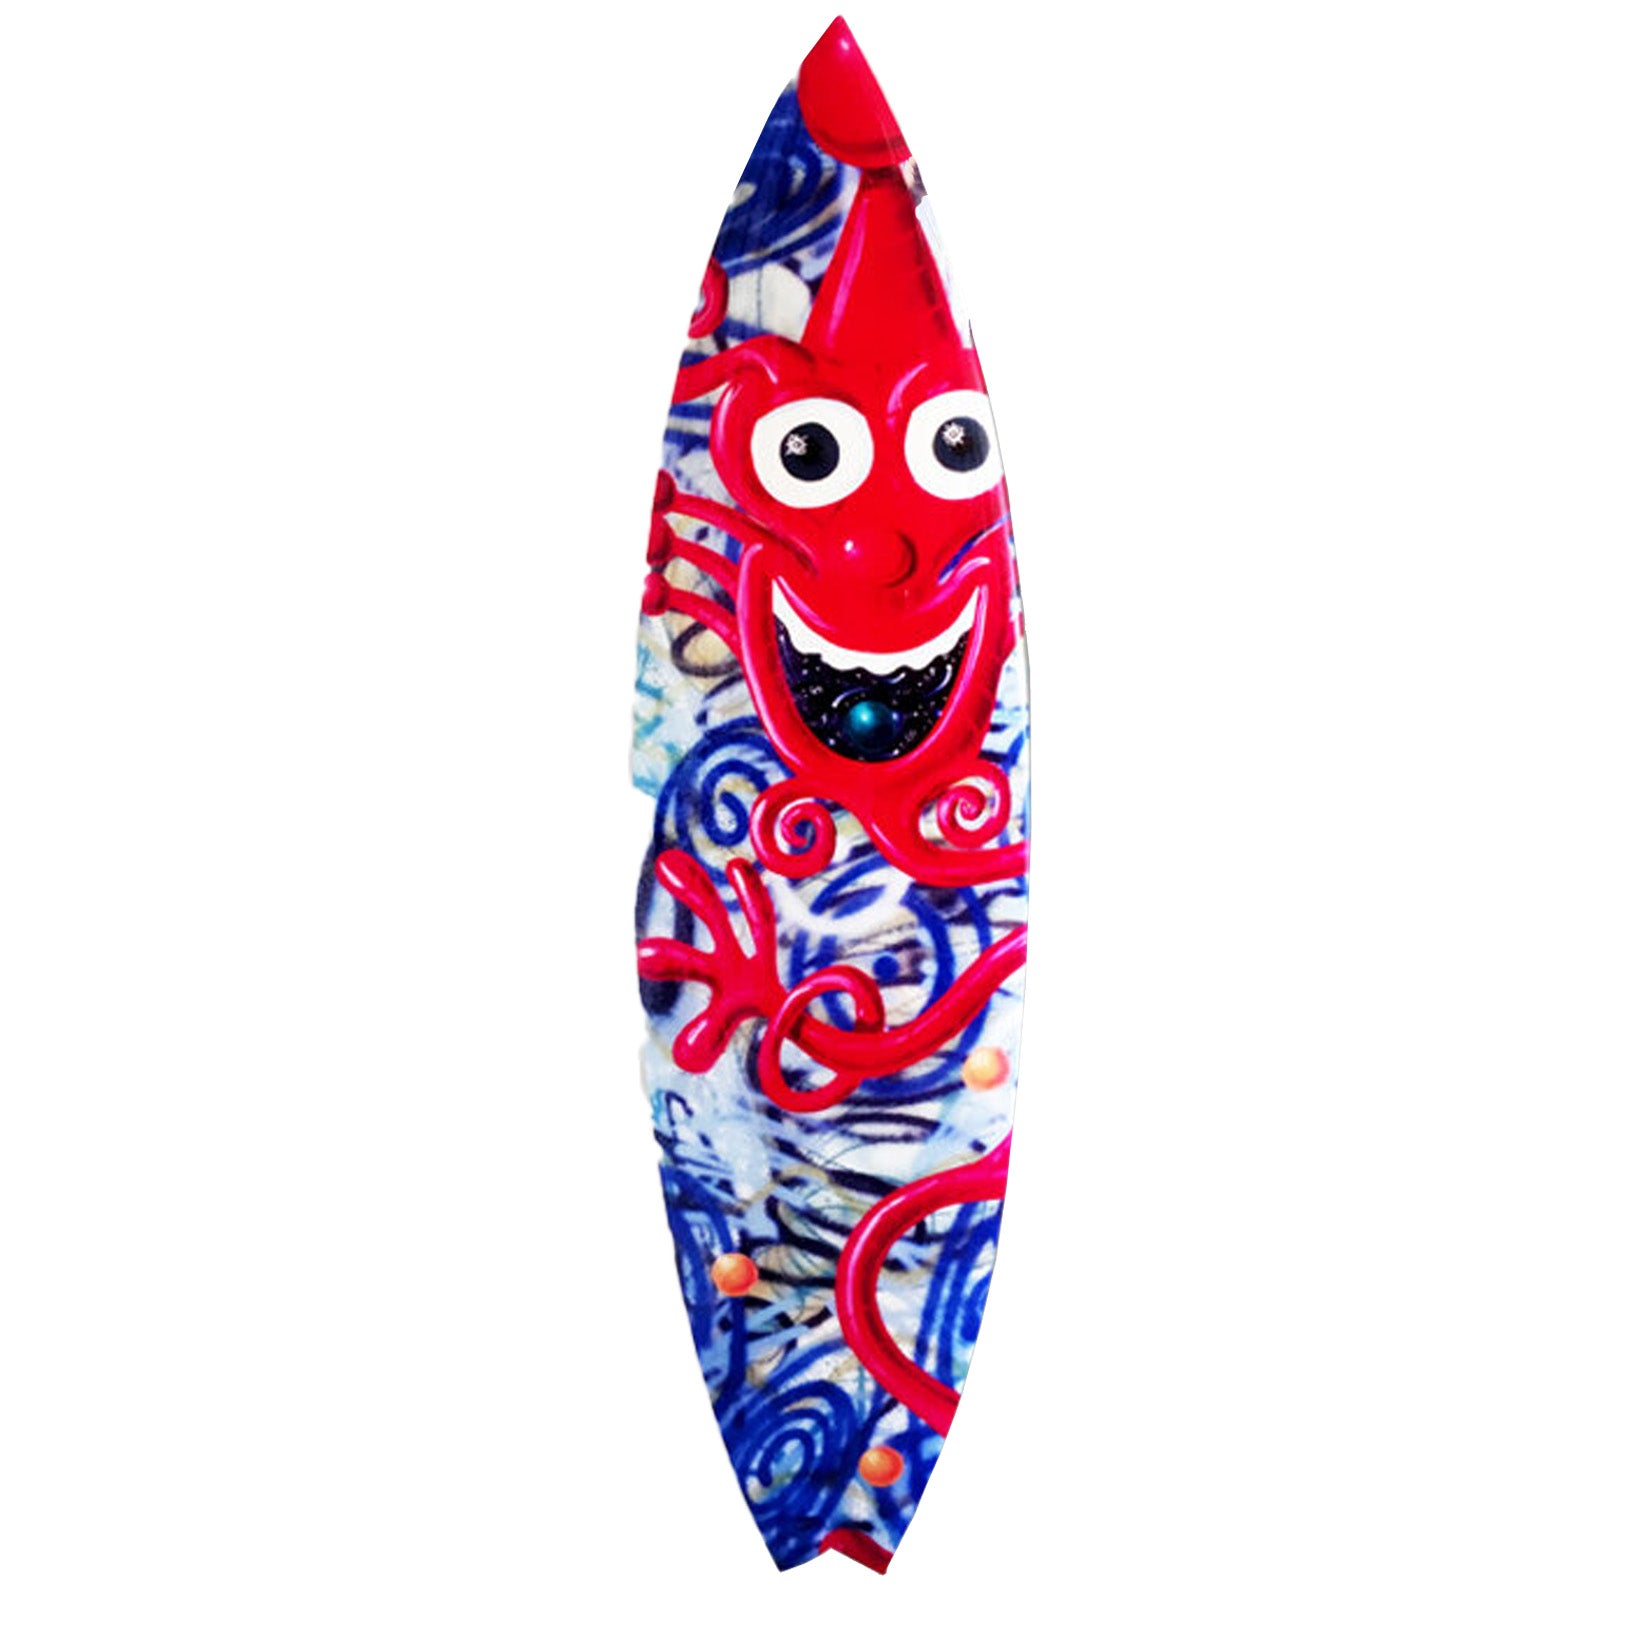 Cosmic Clown Surfboard by Kenny Scharf